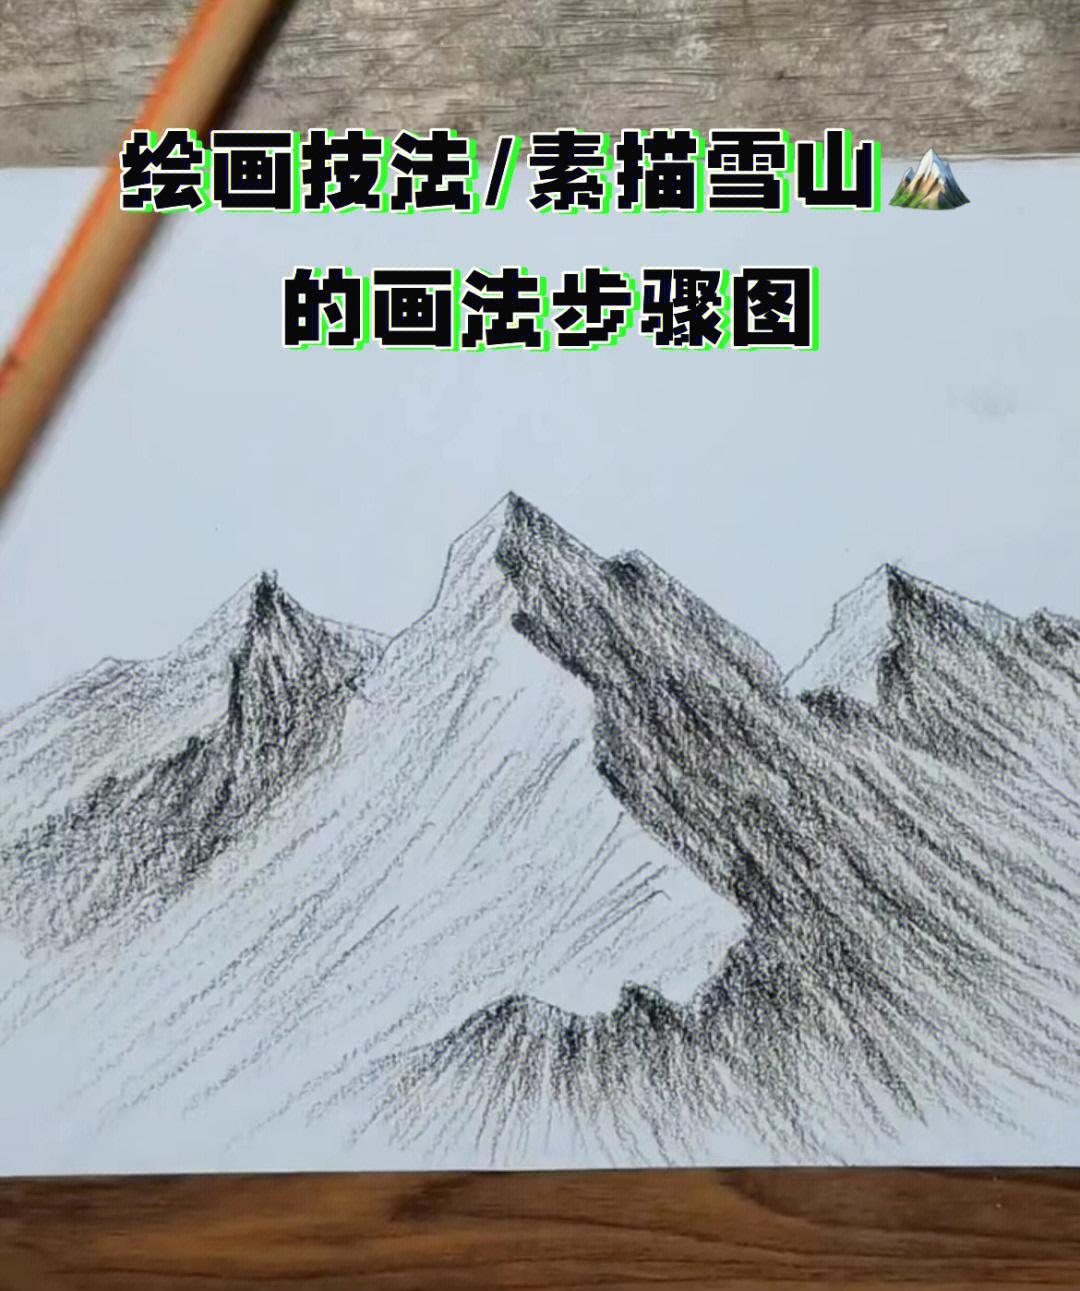 绘画技法素描雪山的画法步骤图